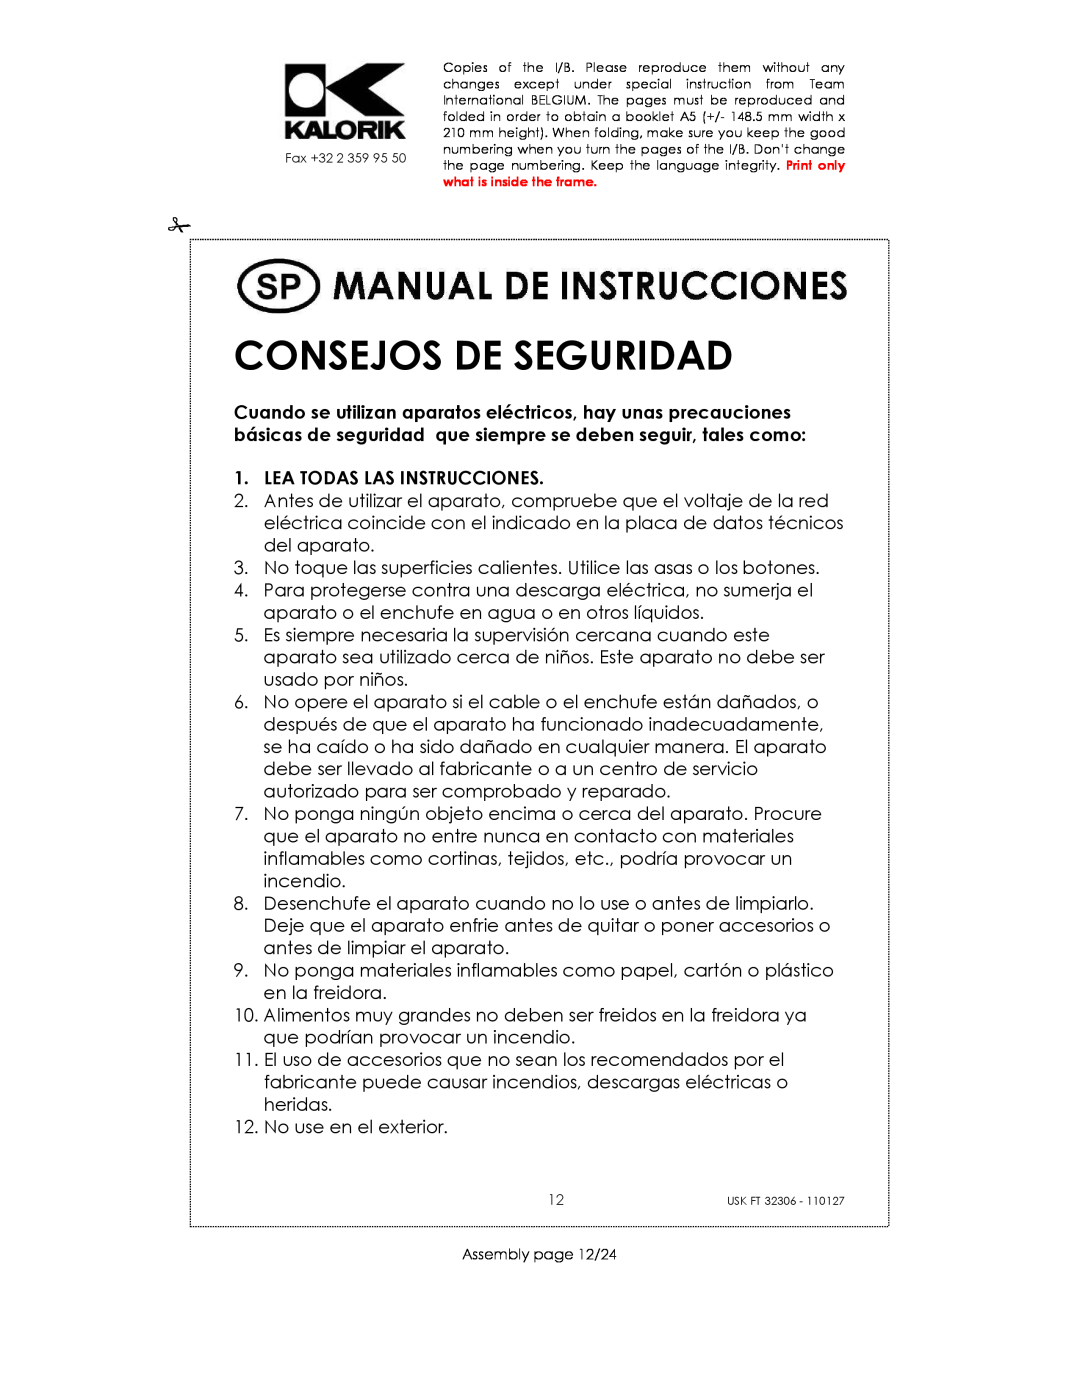 Kalorik USK FT 32306 manual Consejos De Seguridad, Lea Todas Las Instrucciones 